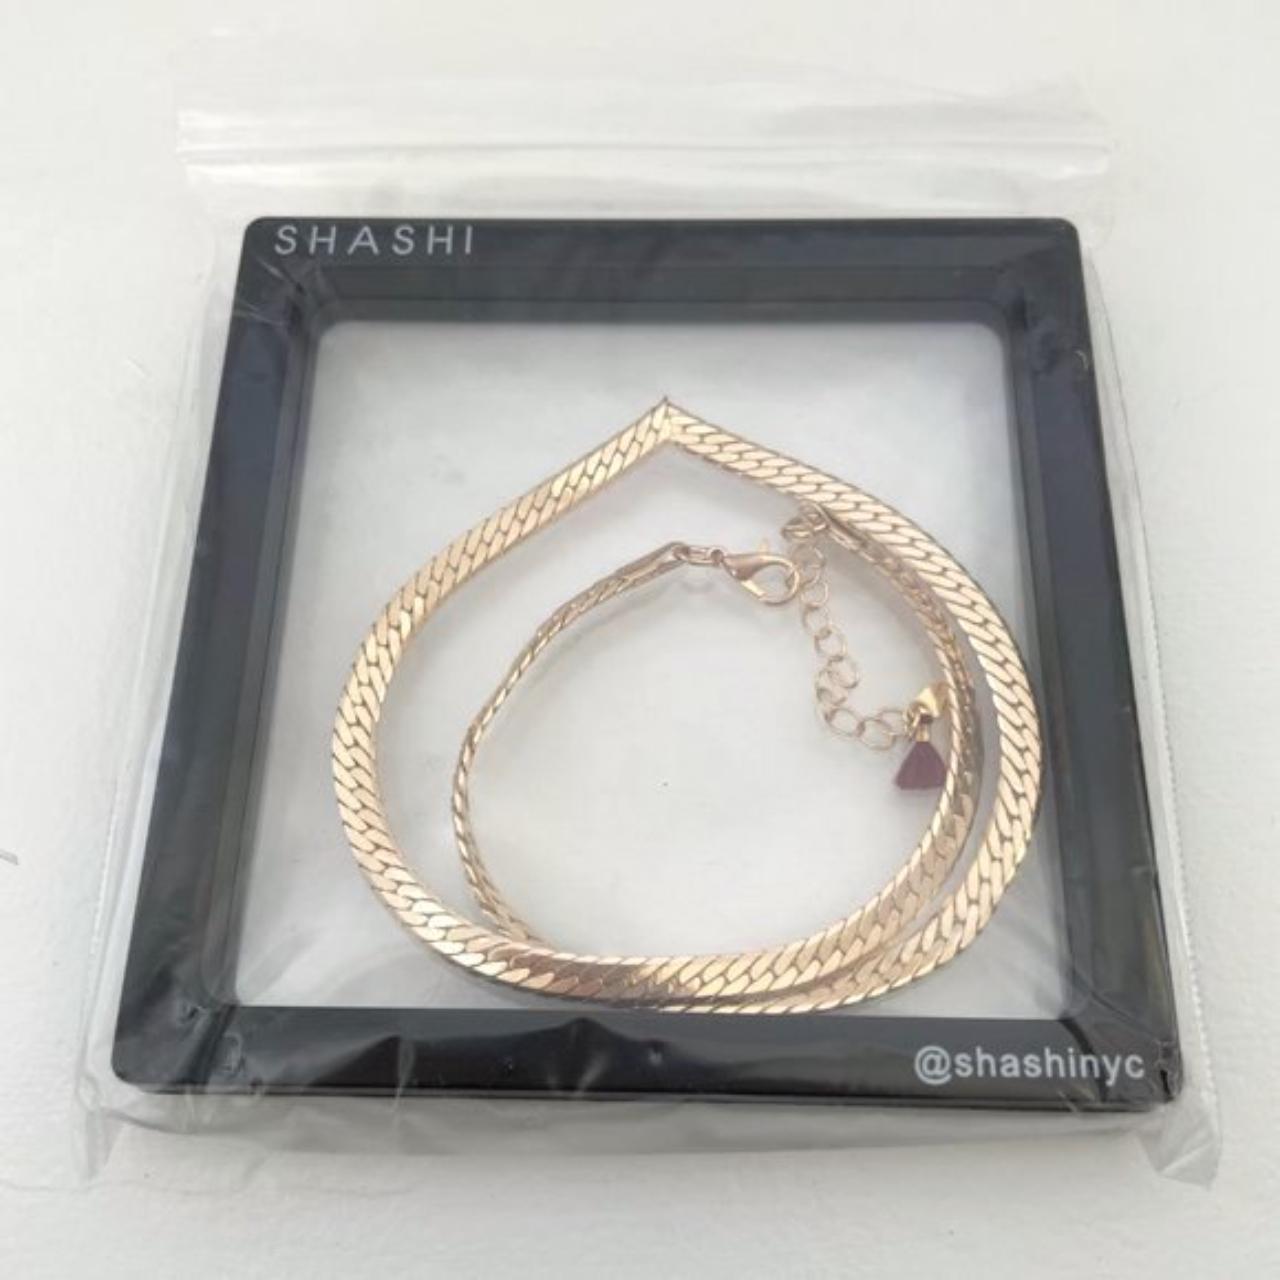 Product Image 4 - New Shashi Rose Gold Plated